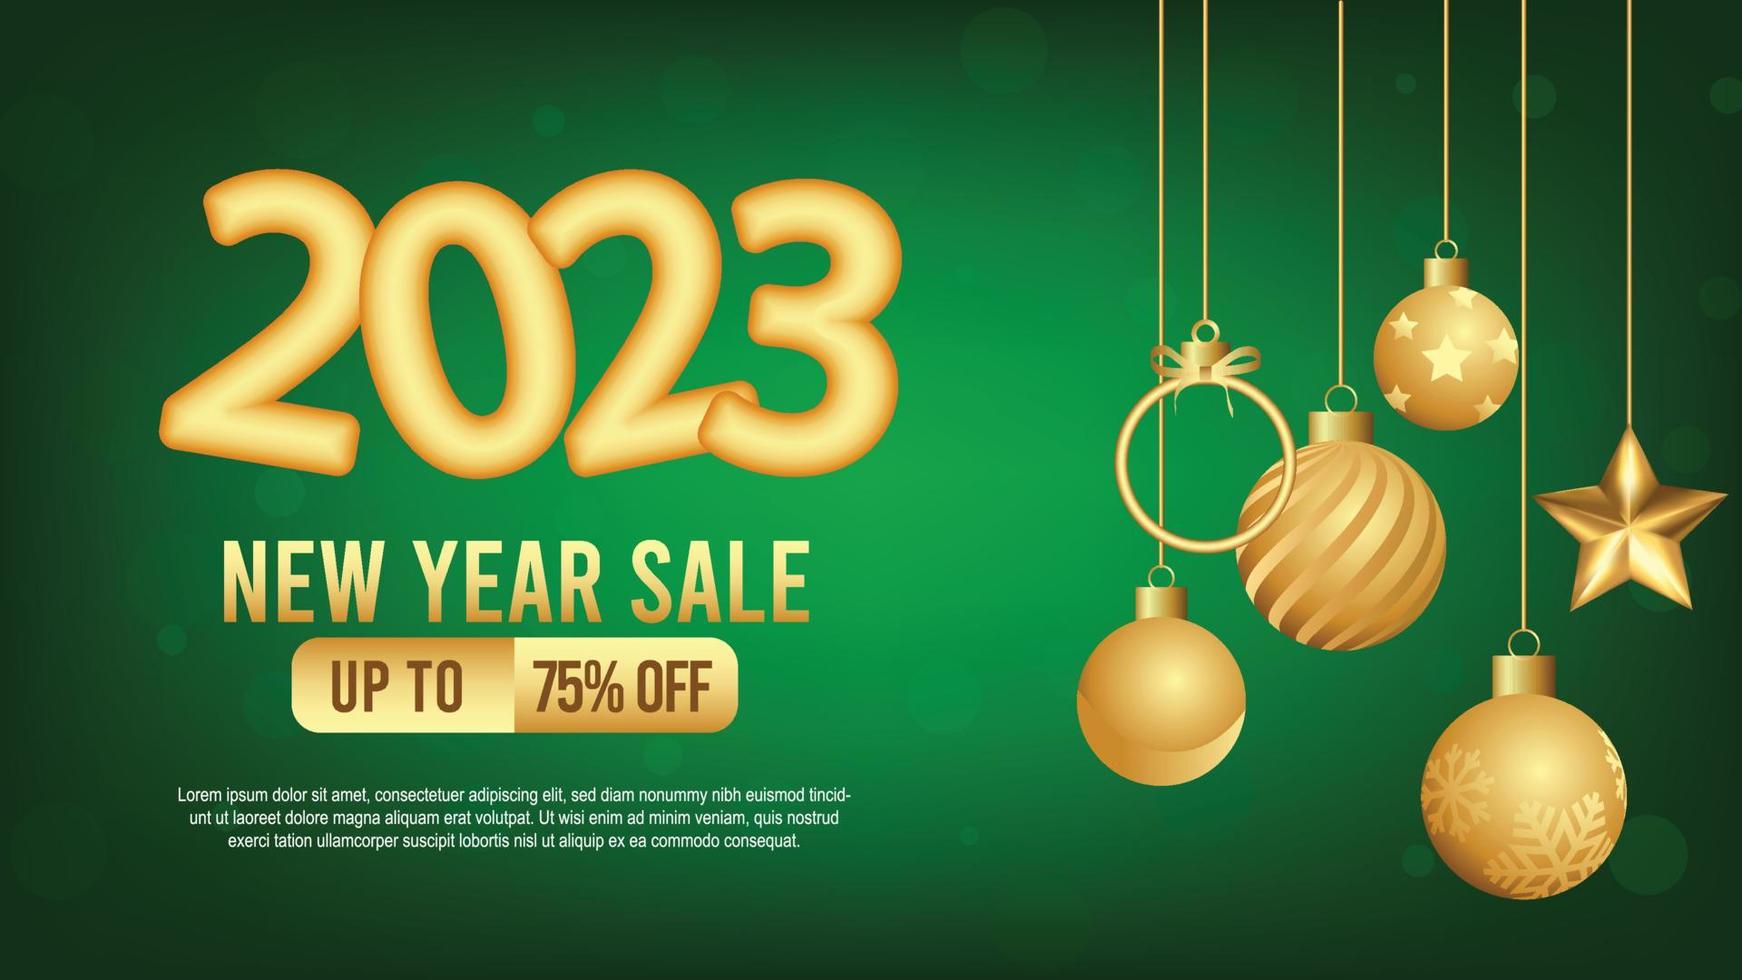 2023 venta de año nuevo publicación en redes sociales o plantilla promocional con decoración navideña vector